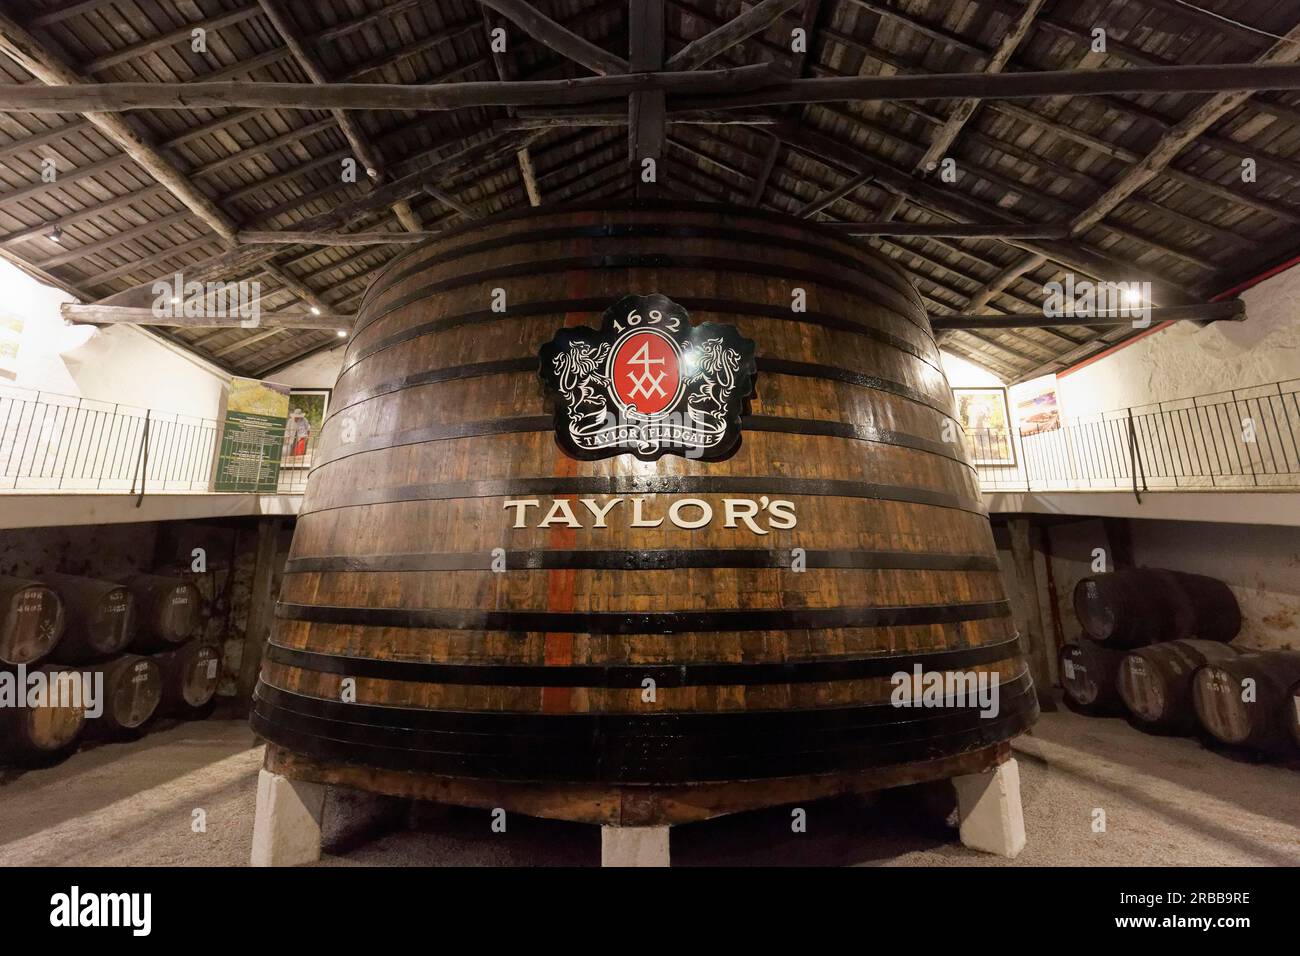 Riesiges Eichenfass mit Portwein, historischer Weinkeller von Taylors Portwein, Vila Nova de Gaia, Region Porto, Portugal Stockfoto